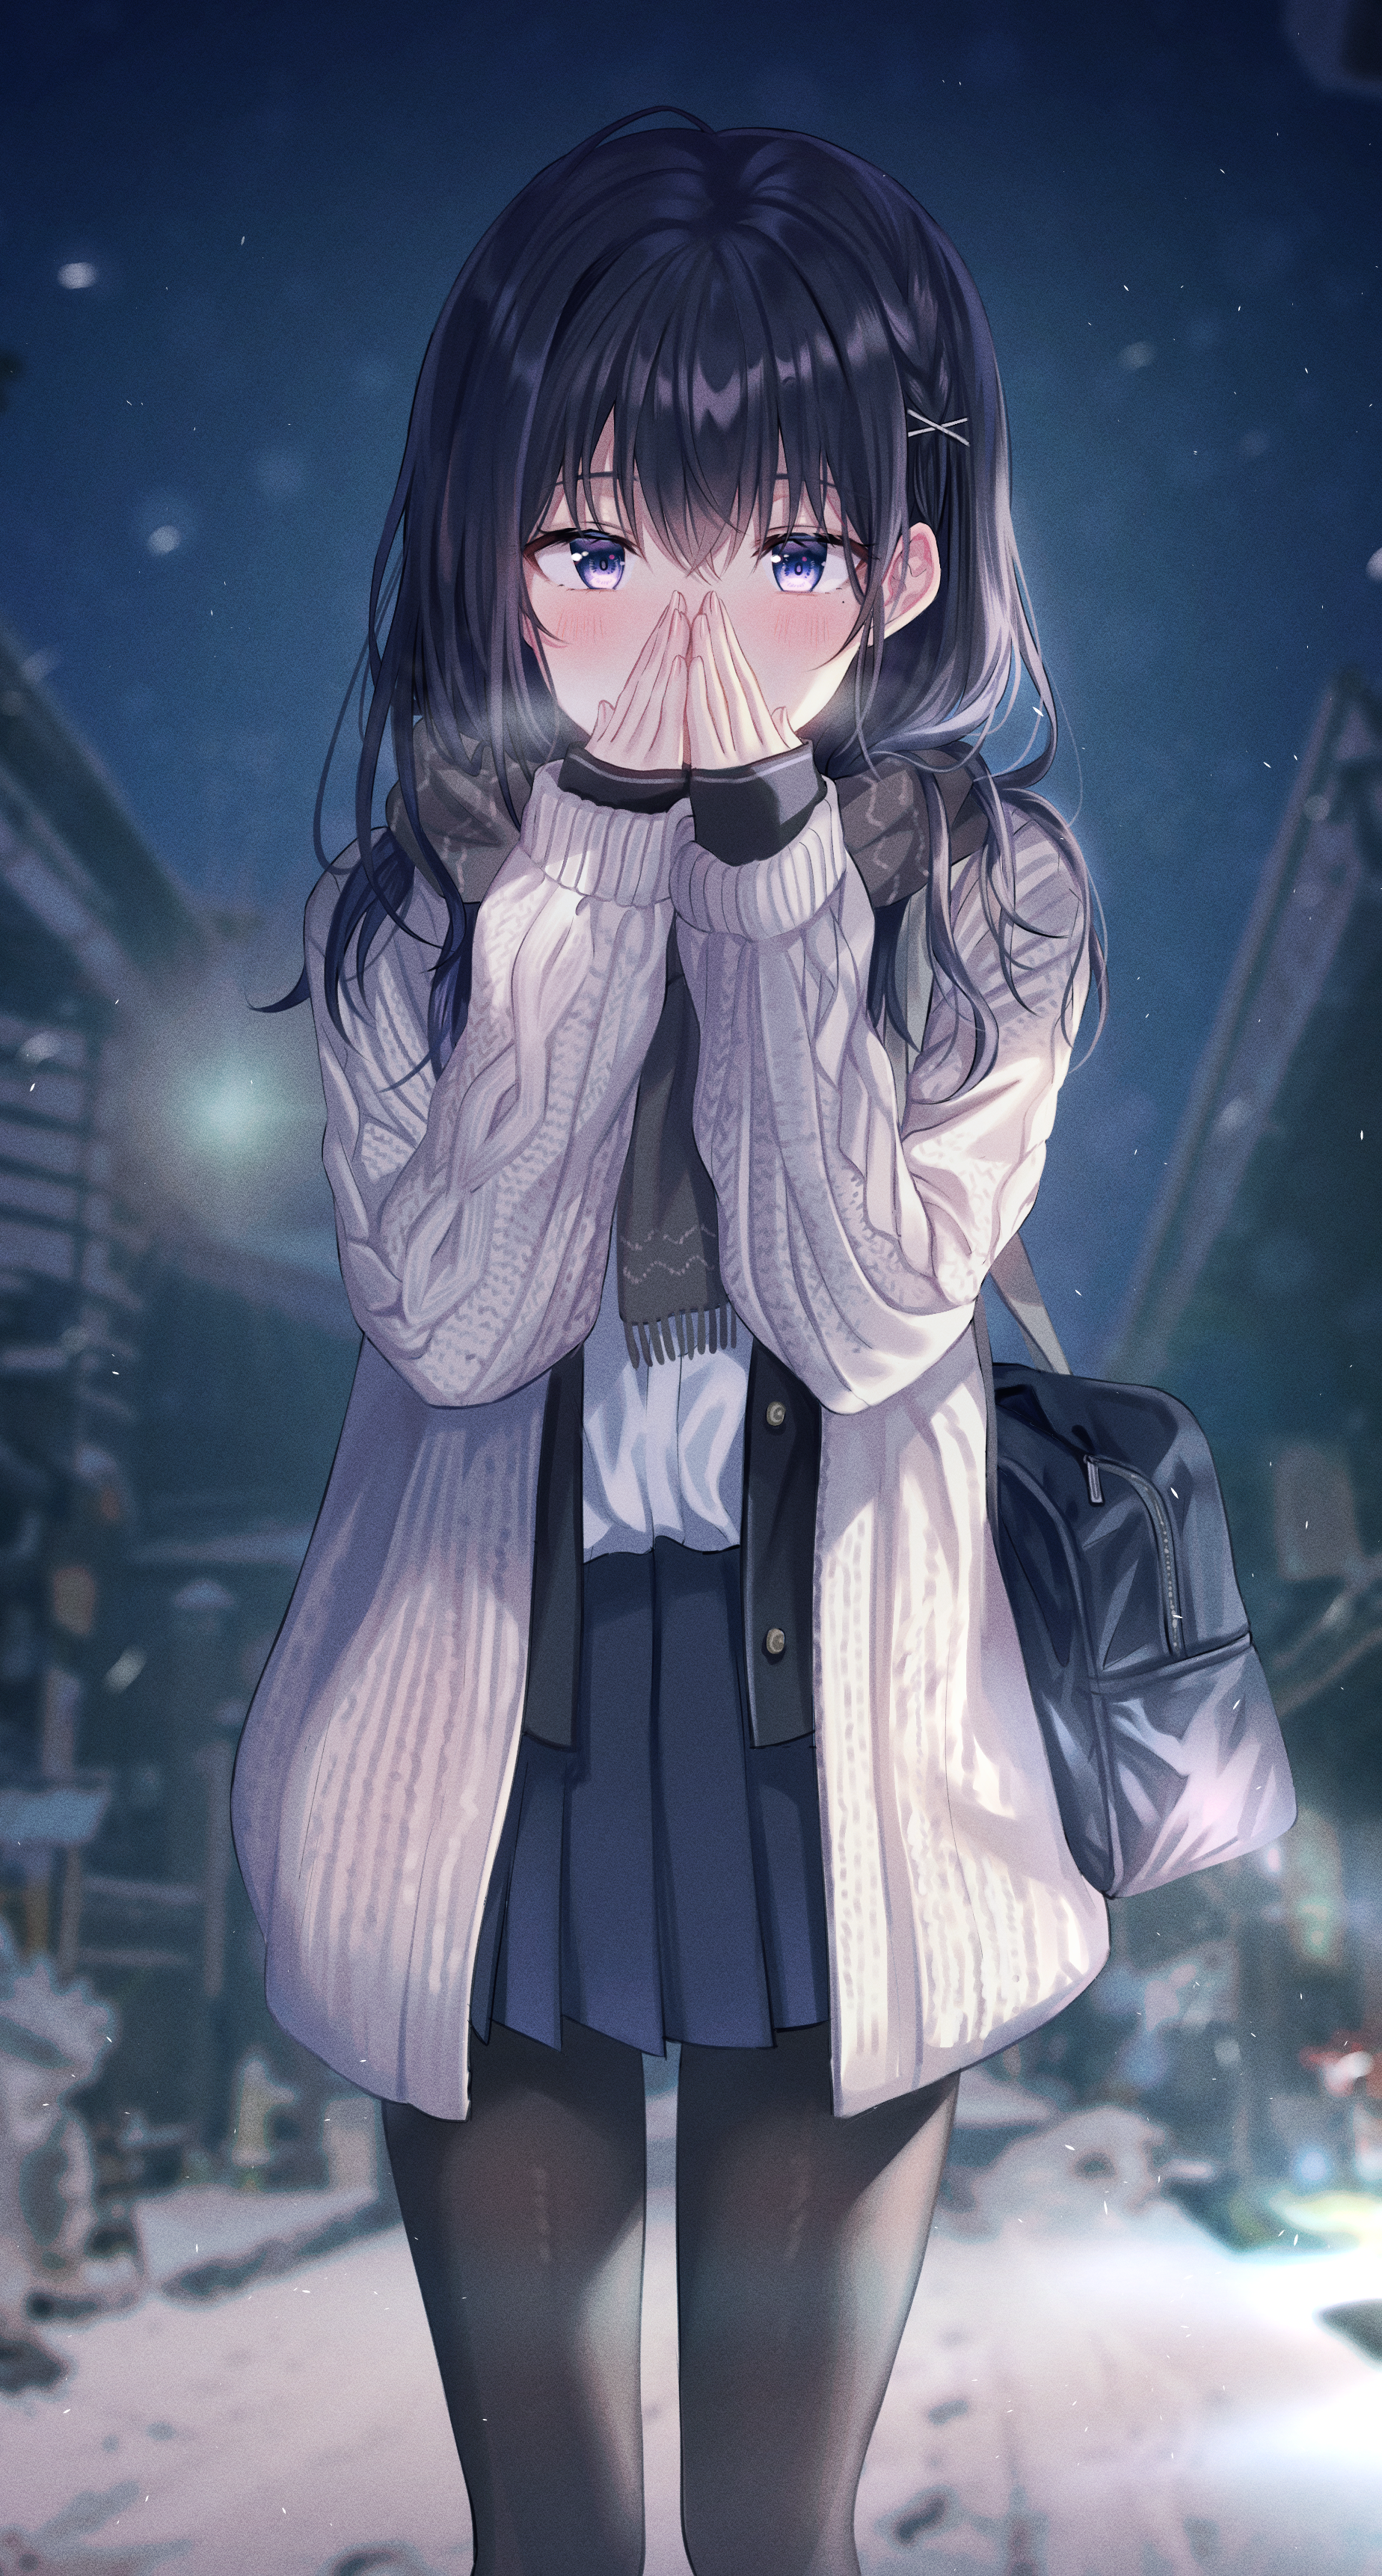 Anime 1848x3445 anime anime girls Tokkyu (artista) dark hair blue eyes blushing school uniform sweater pantyhose night winter scarf standing looking at viewer